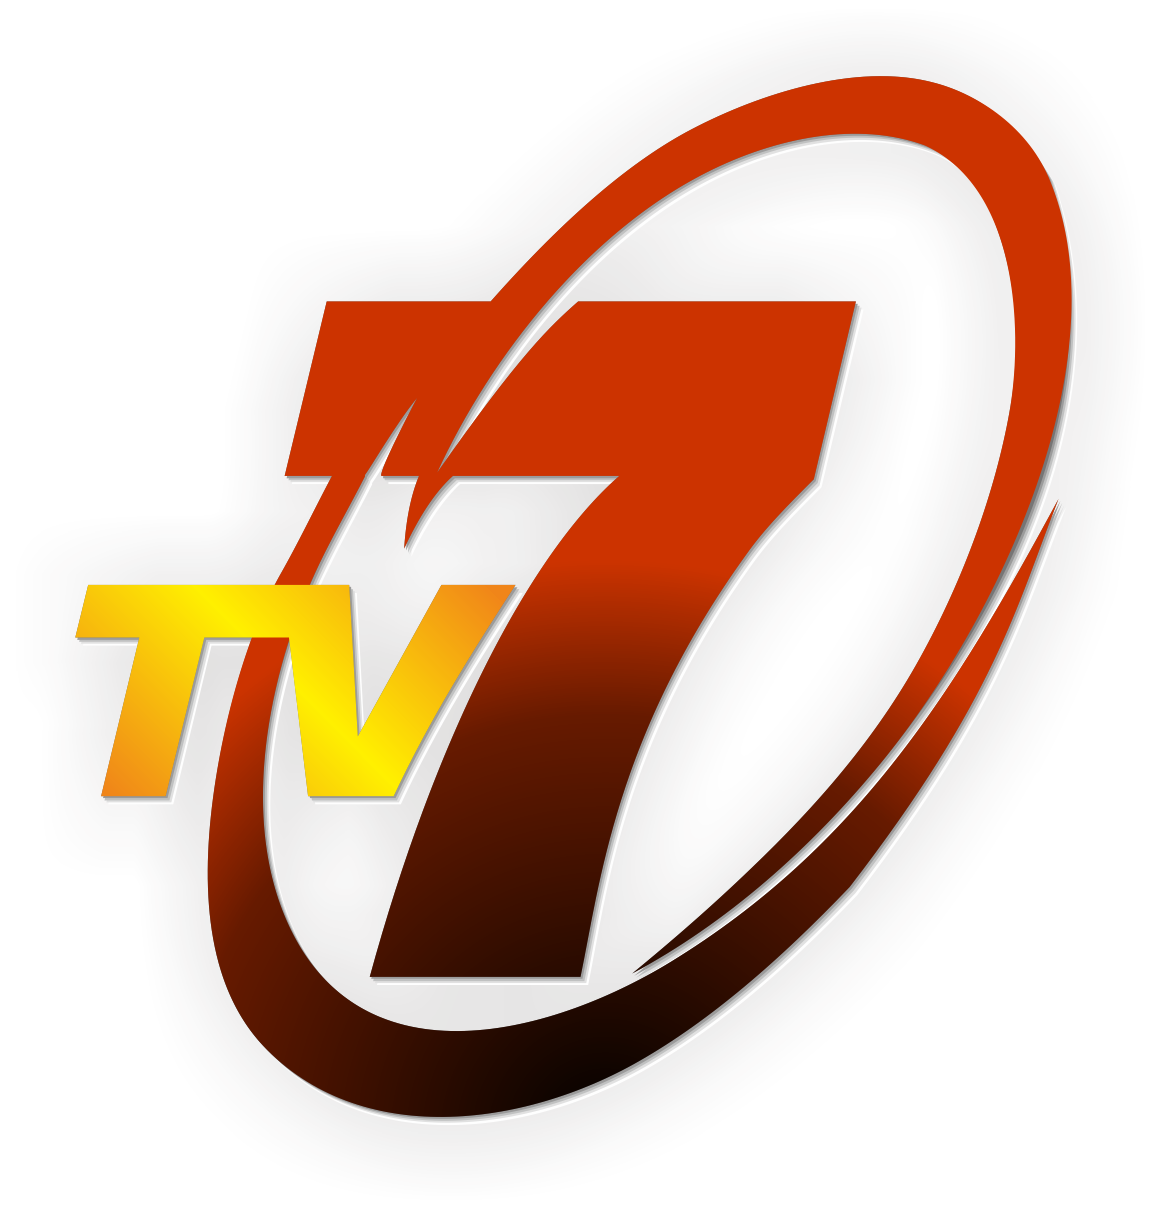 Тв севен. 7 TV логотип. 7тв логотип. Семерка логотип. ТВ 21 логотип.